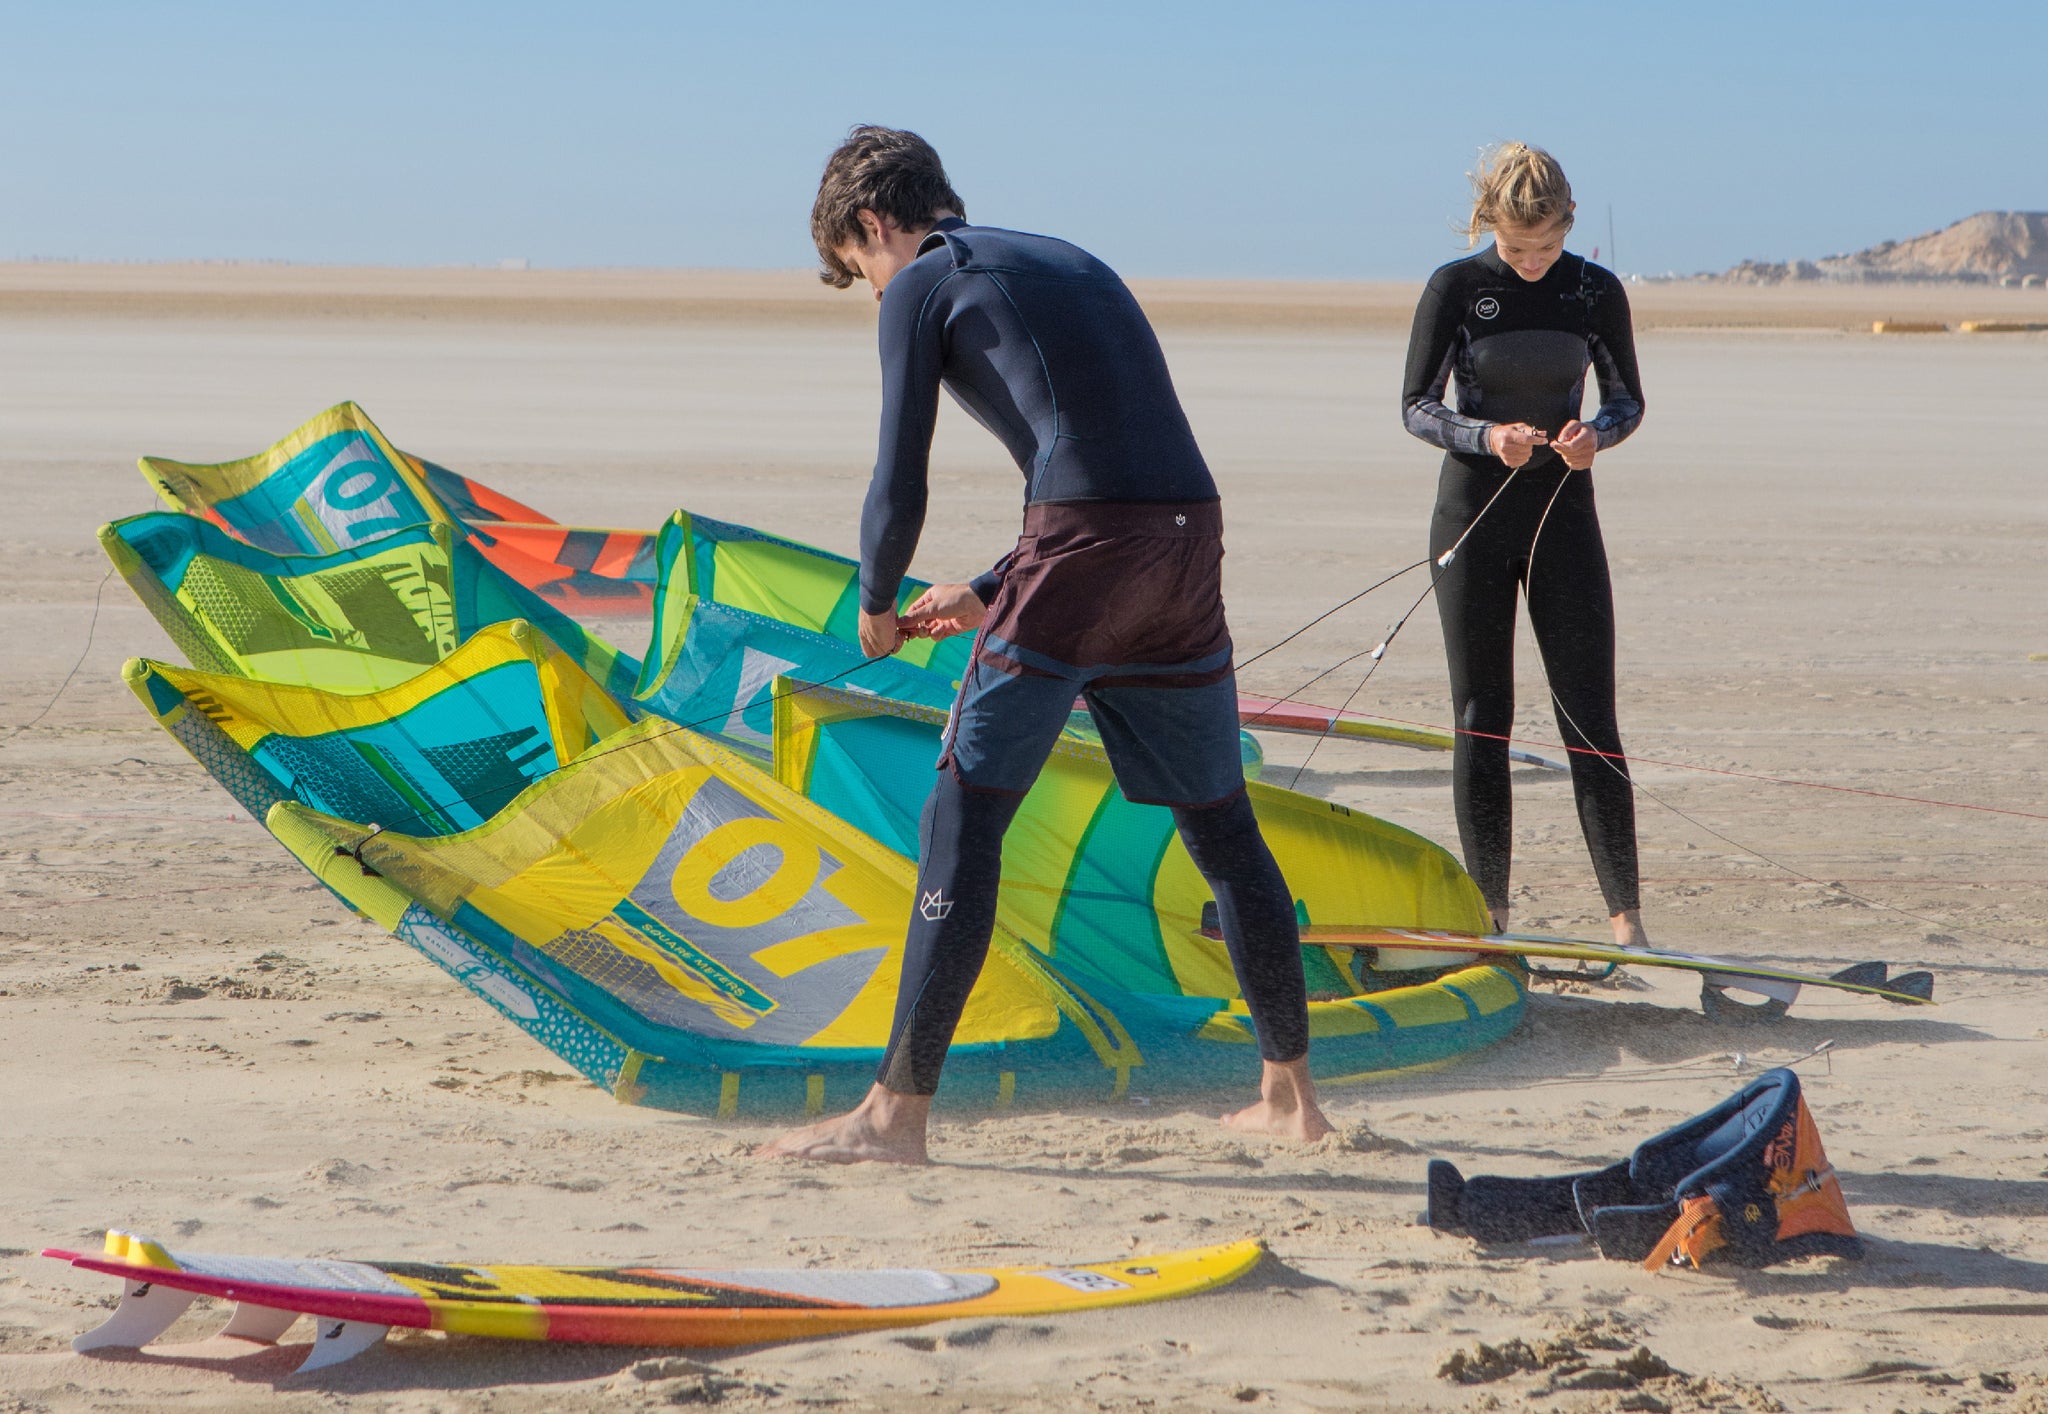 Kiteboarding Club Team Joscha und Laura bei Kite Aufbau in Dakhla in Marokko